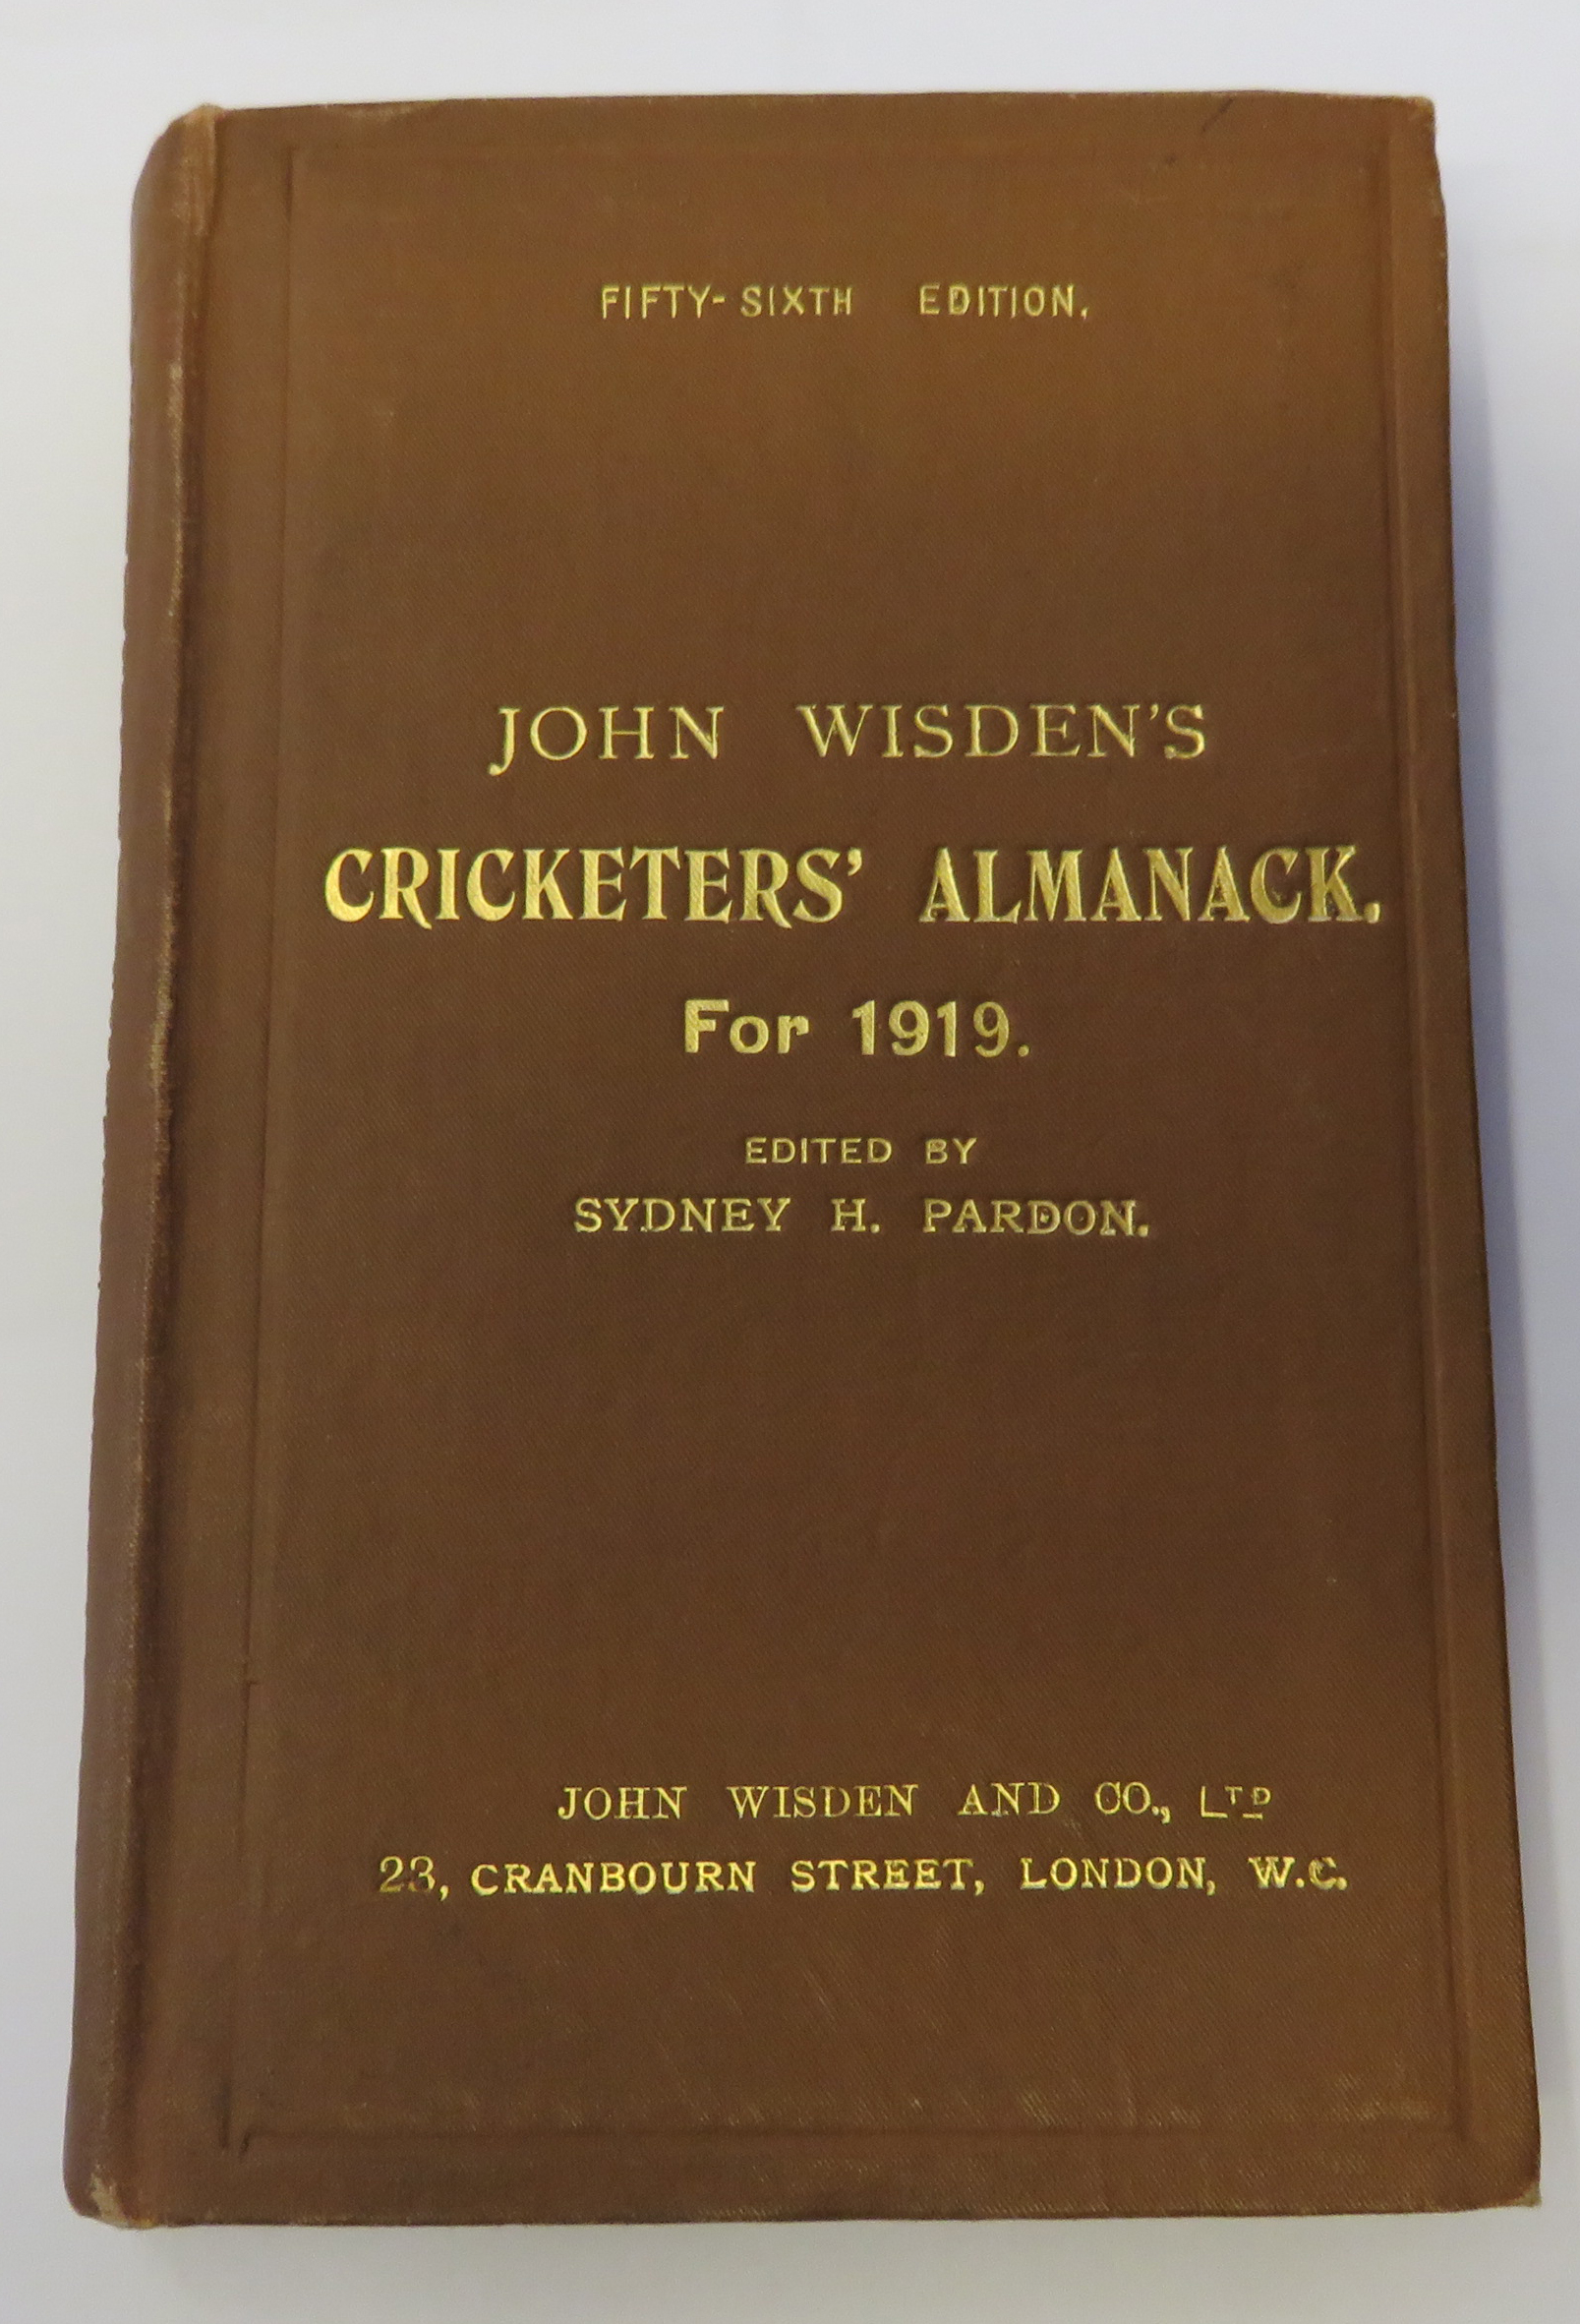 John Wisden's Cricketers' Almanack for 1919